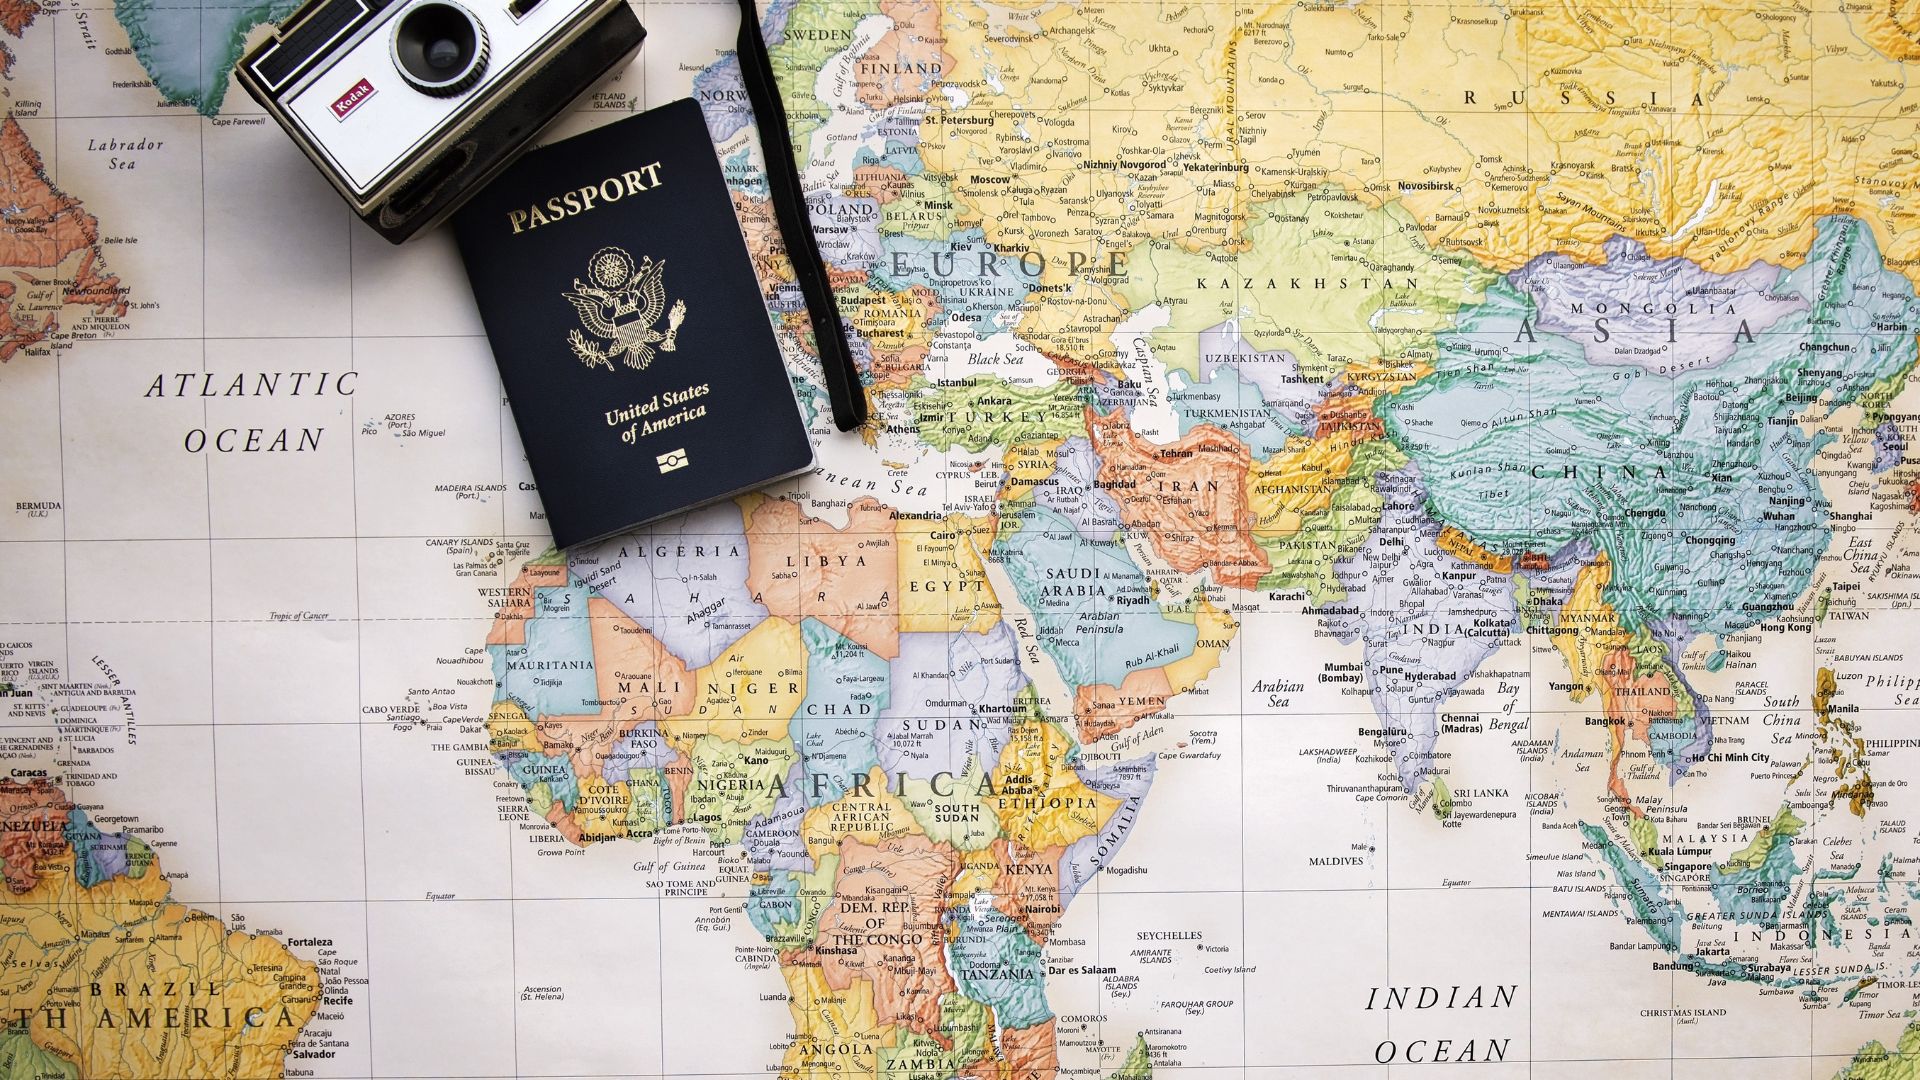 Imagem do mapa do mundo. Sobre ele, um passaporte e uma câmera fotográfica antiga.